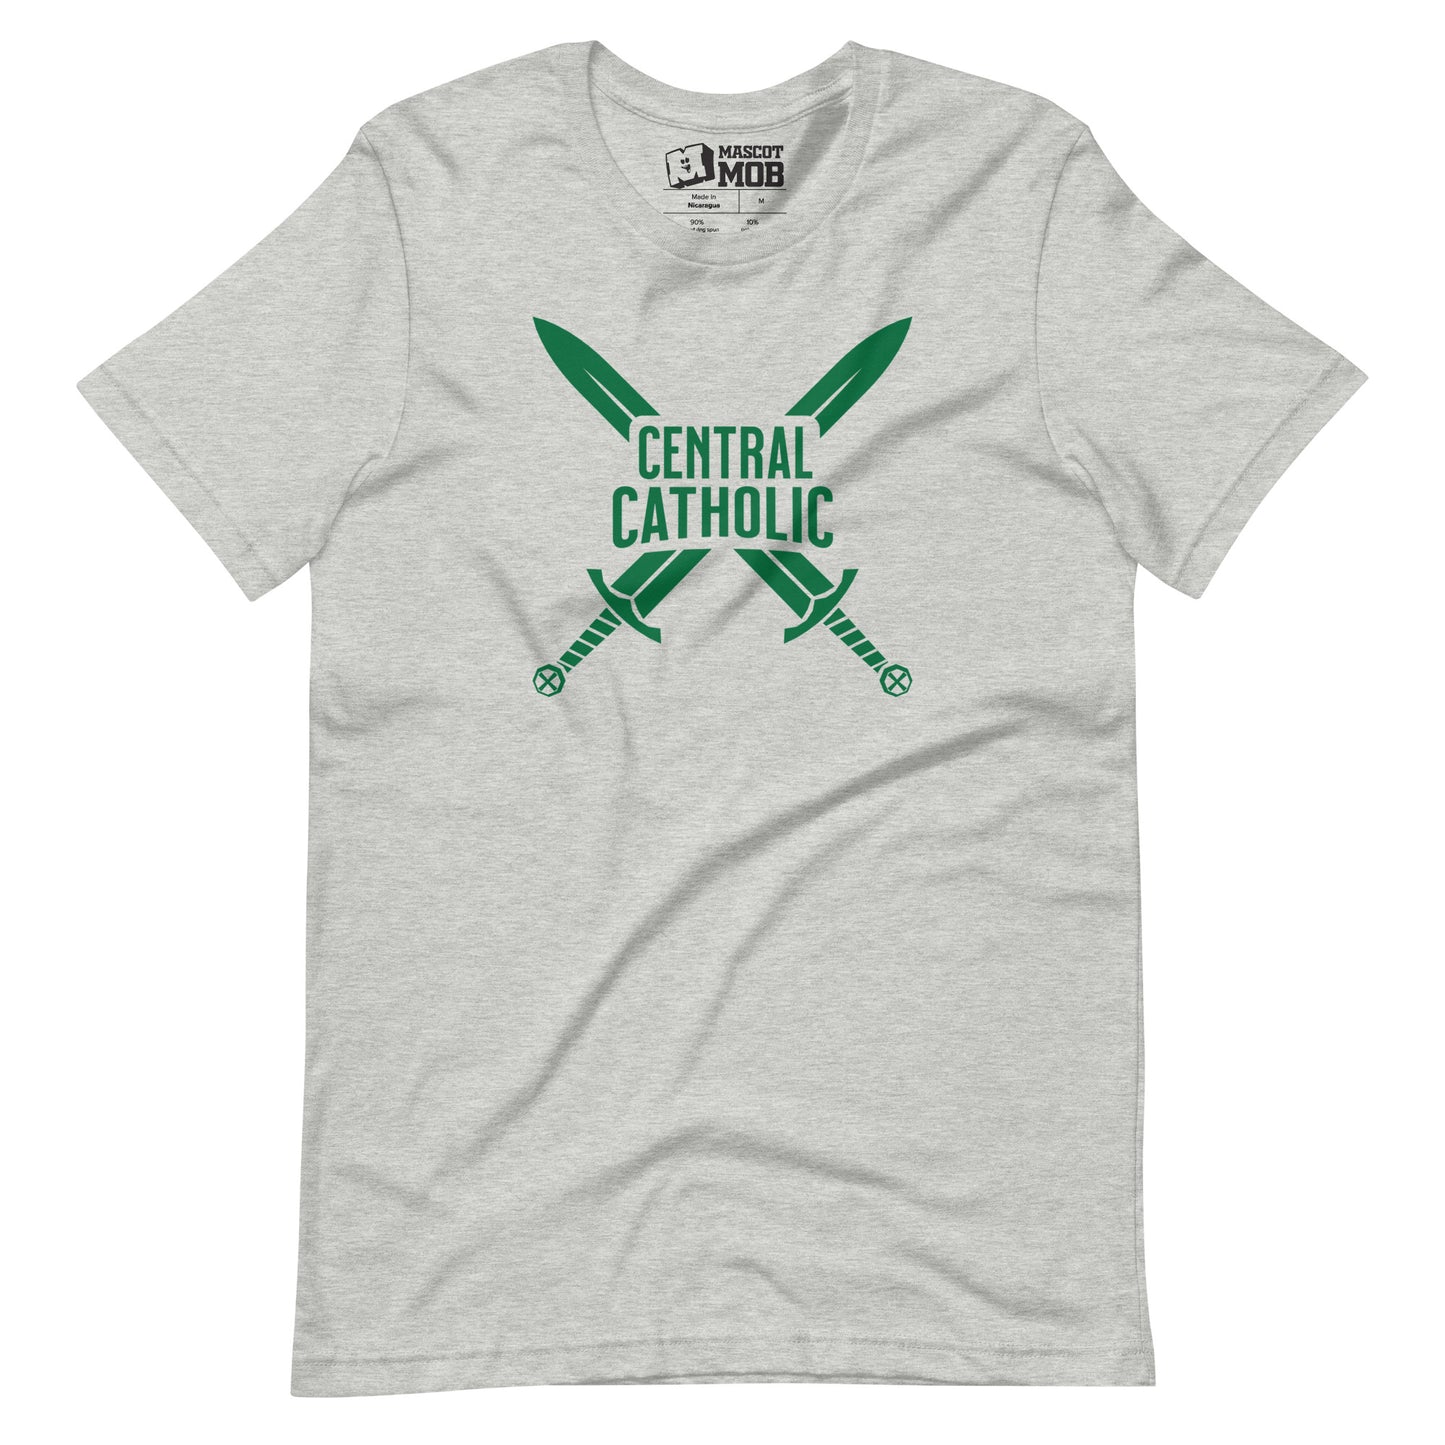 Central Catholic Unisex t-shirt